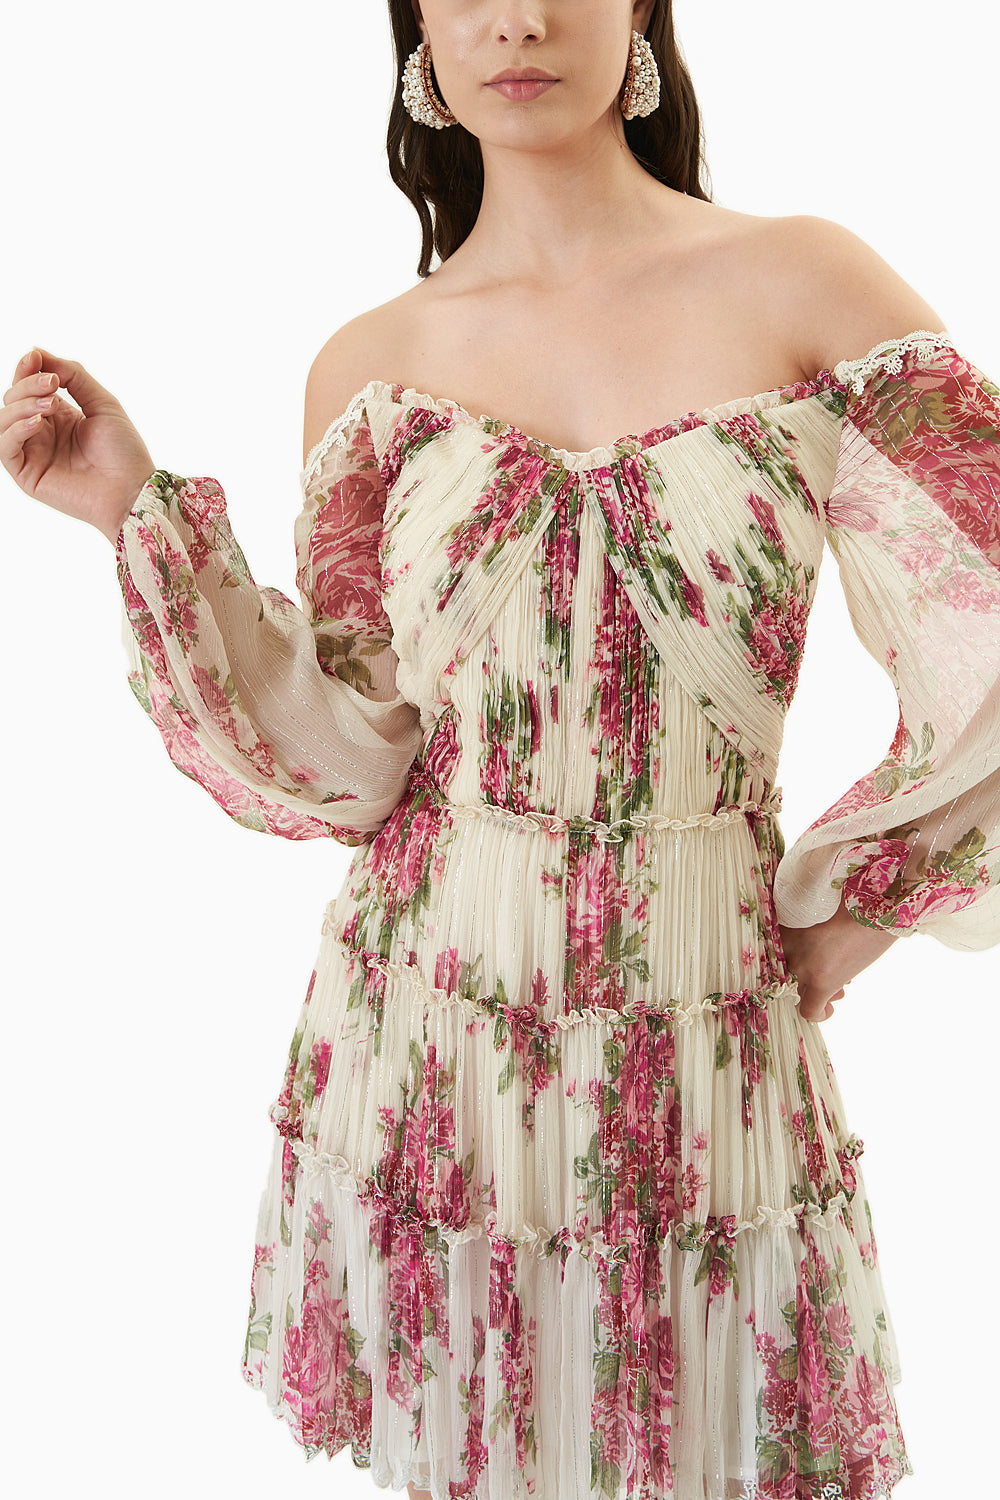 Rose Printed Off-Shoulder Short Dress